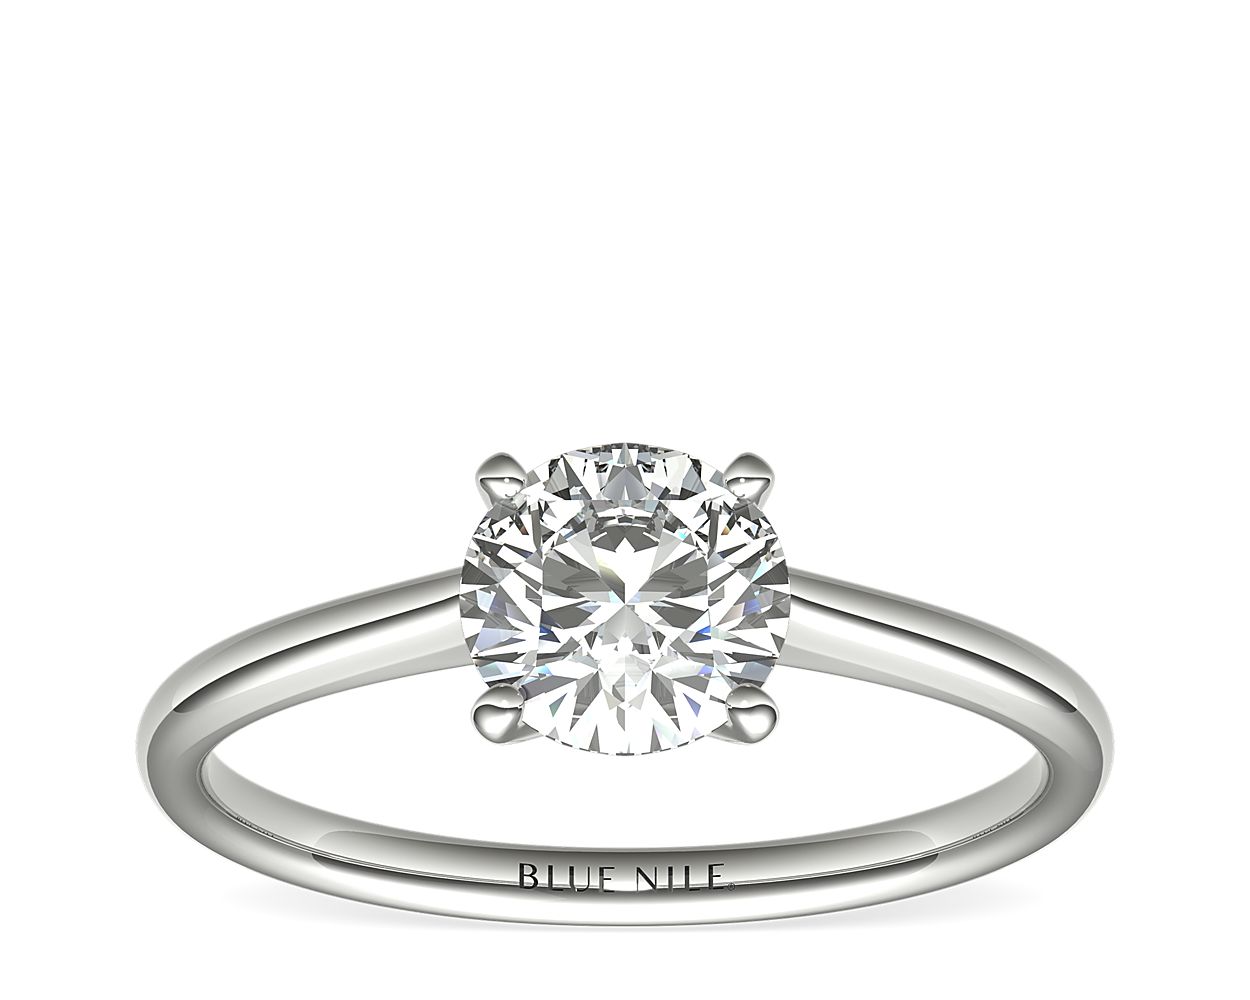 Petite Solitaire Engagement Ring in Platinum 1.10 Carat H-VS1 Excellent Cut Round Diamond